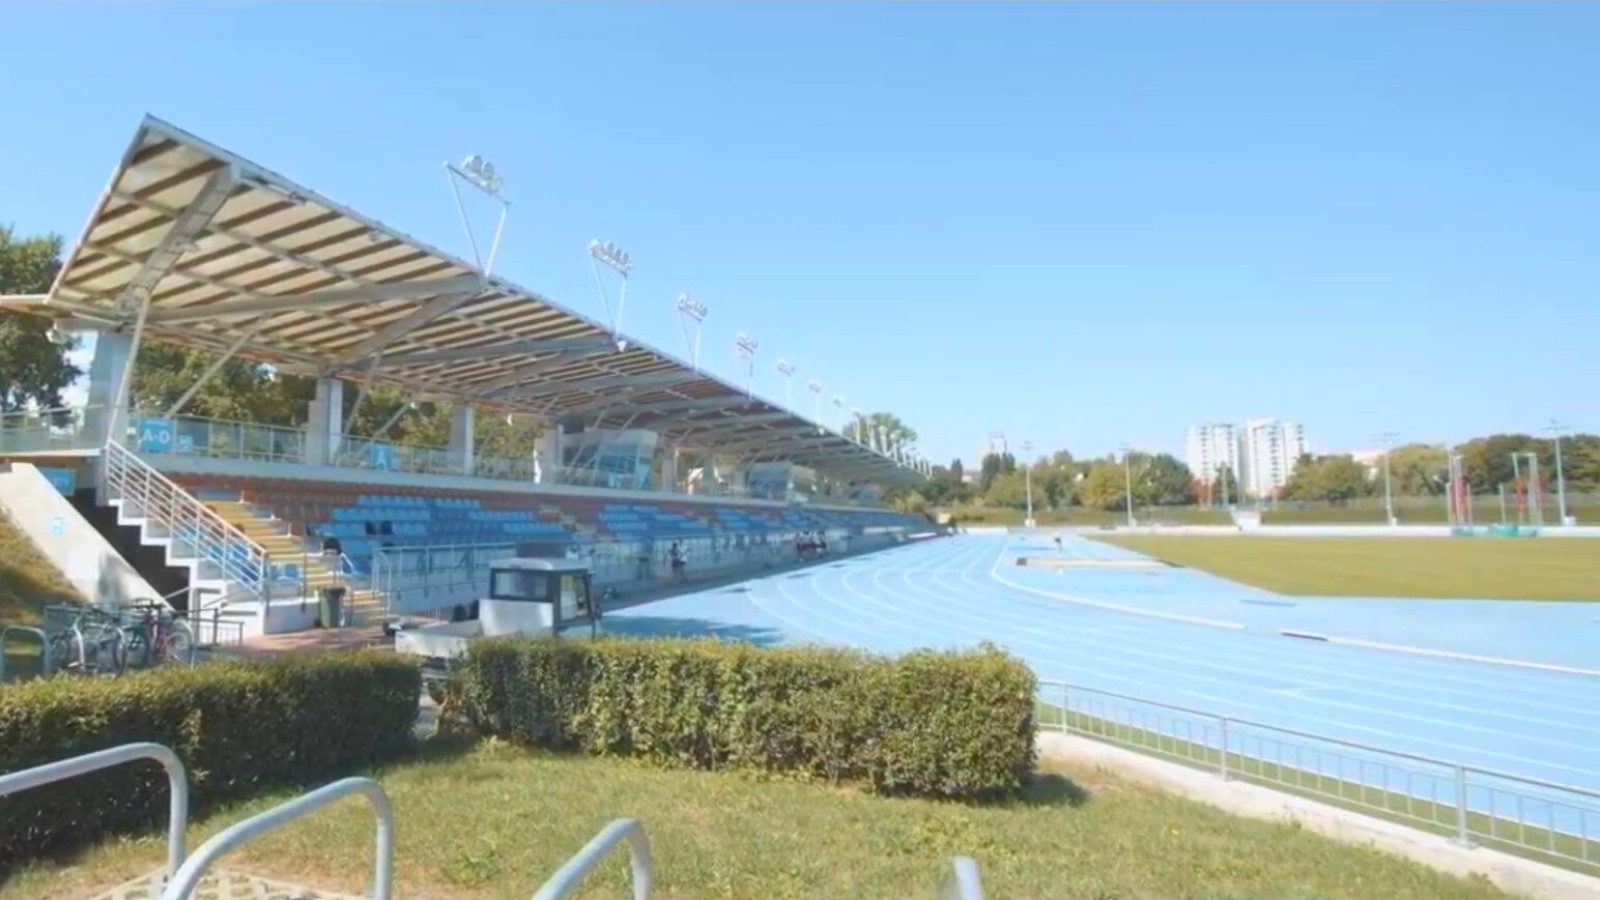 Athletics stadium in Lublin